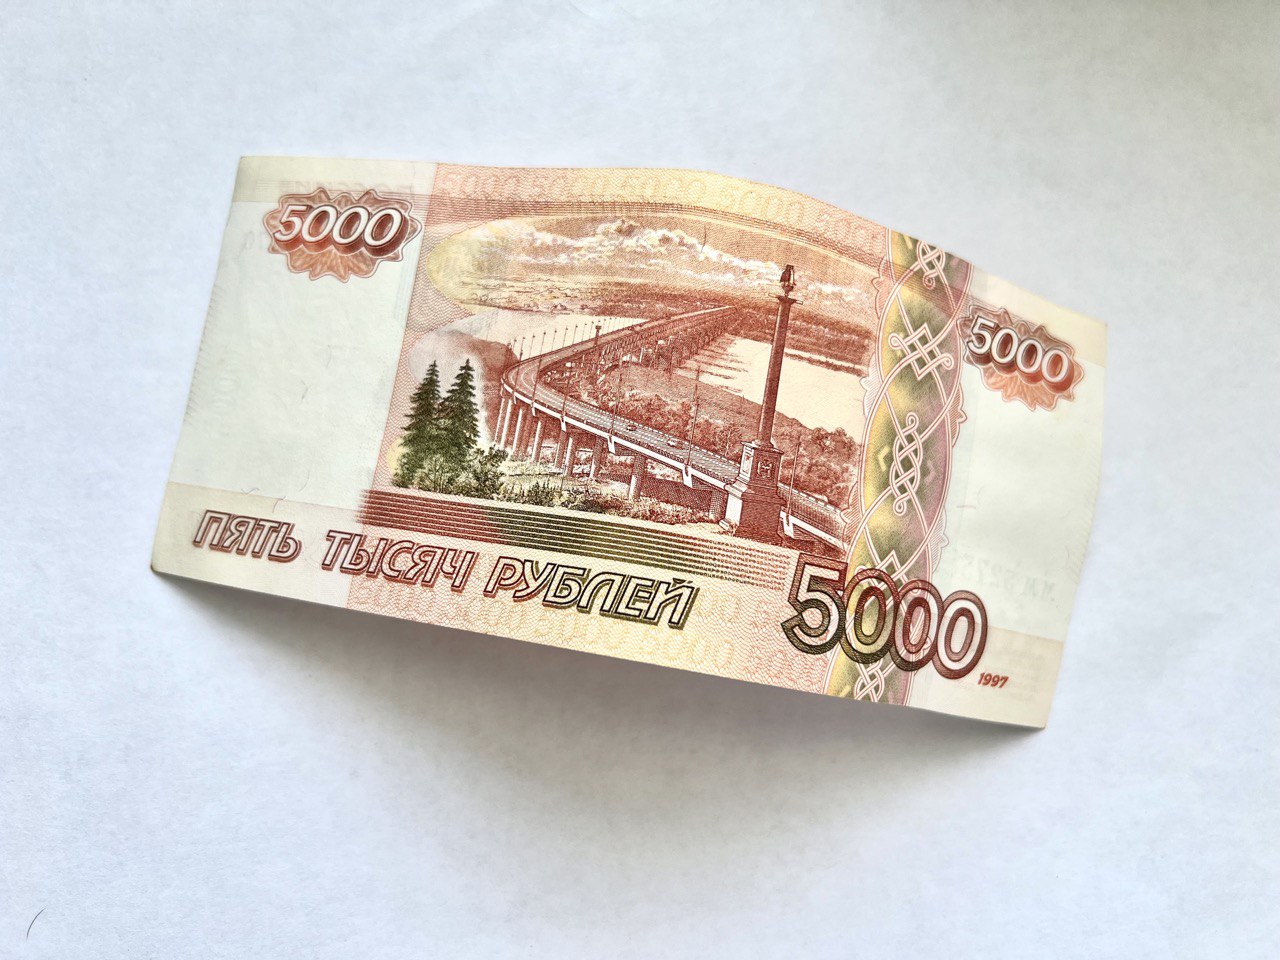 Охранник в стройкомпаниях Самары может получать до 60 тысяч рублей в месяц